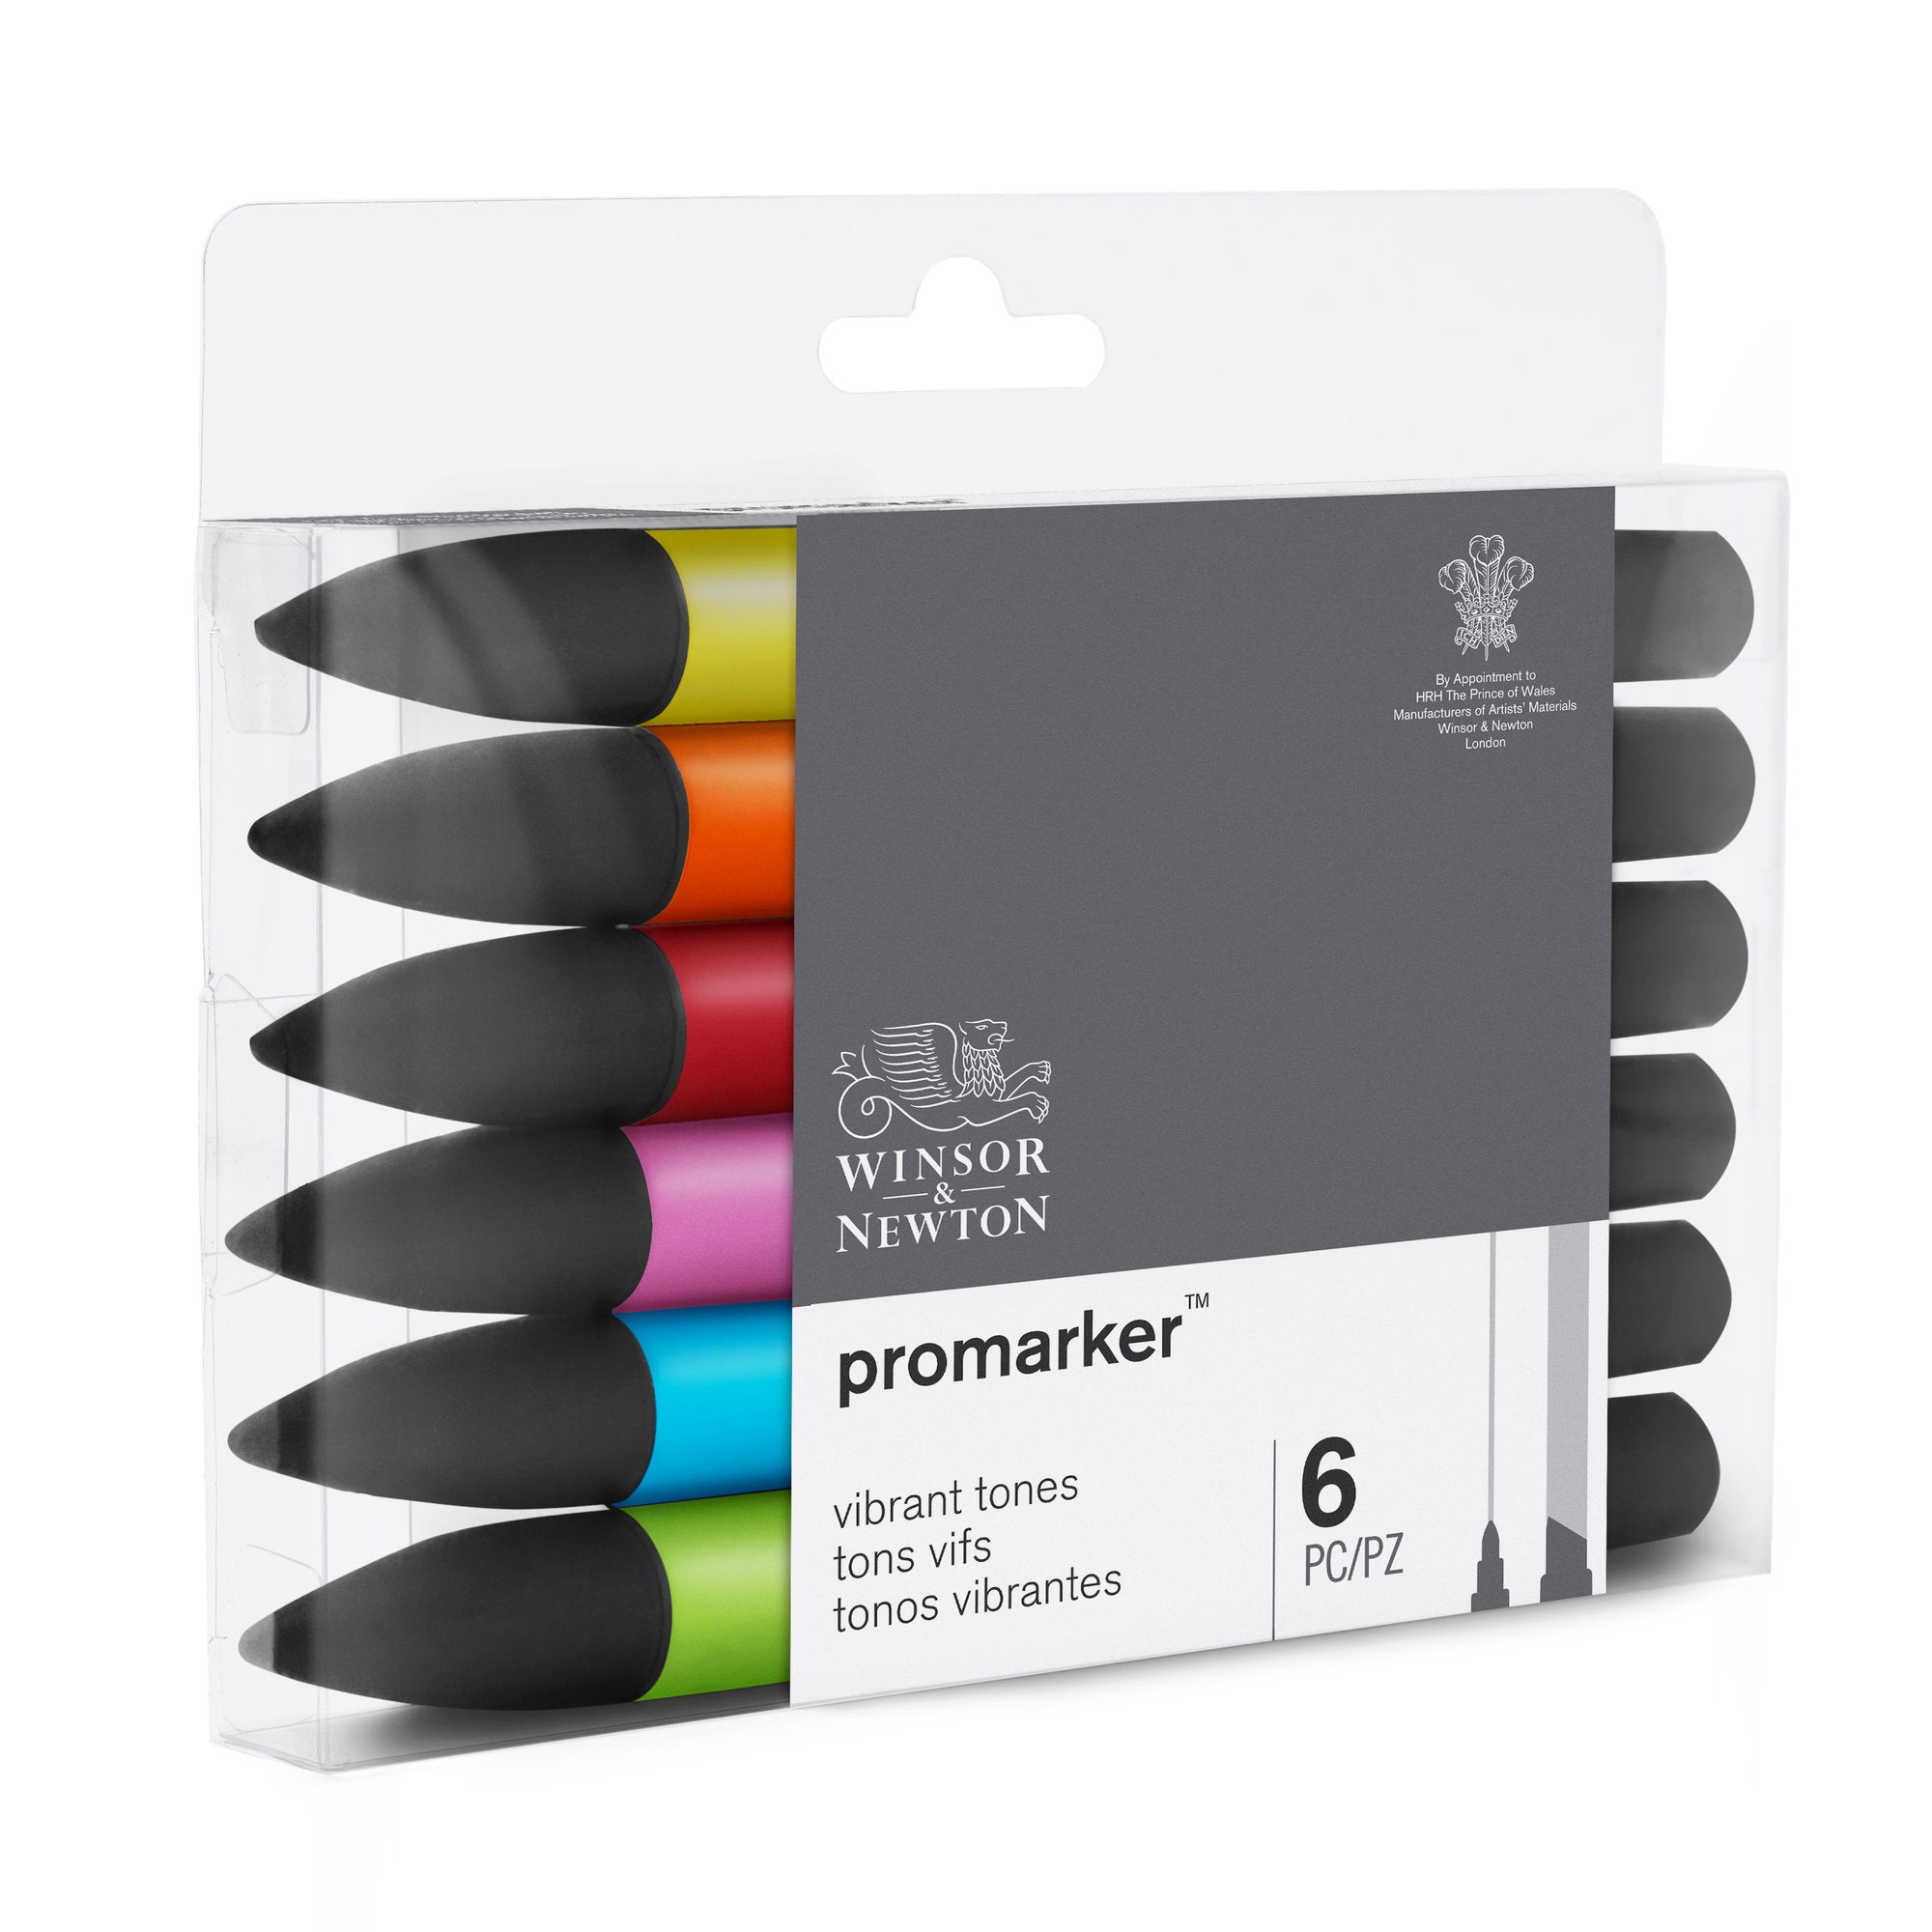 Ensemble de 12 crayons feutre anti-roulement - L'armoire à Jeux Inc.